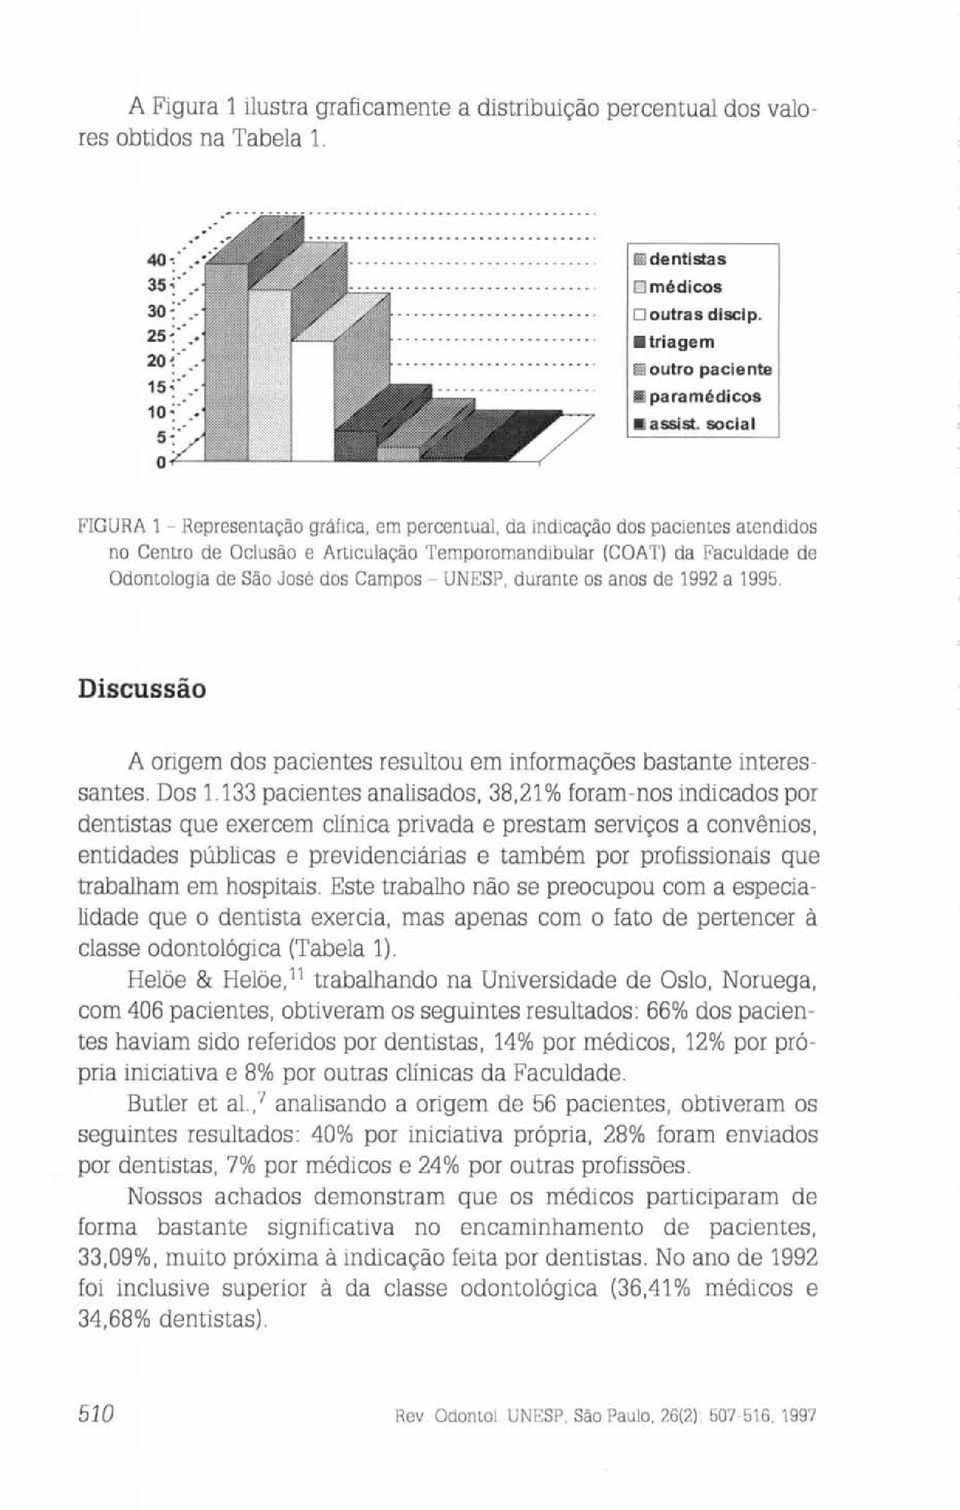 Campos - UNESP, durante os anos de 1992 a 1995. Discussão A origem dos pacientes resultou em informações bastante interessantes. Dos 1.